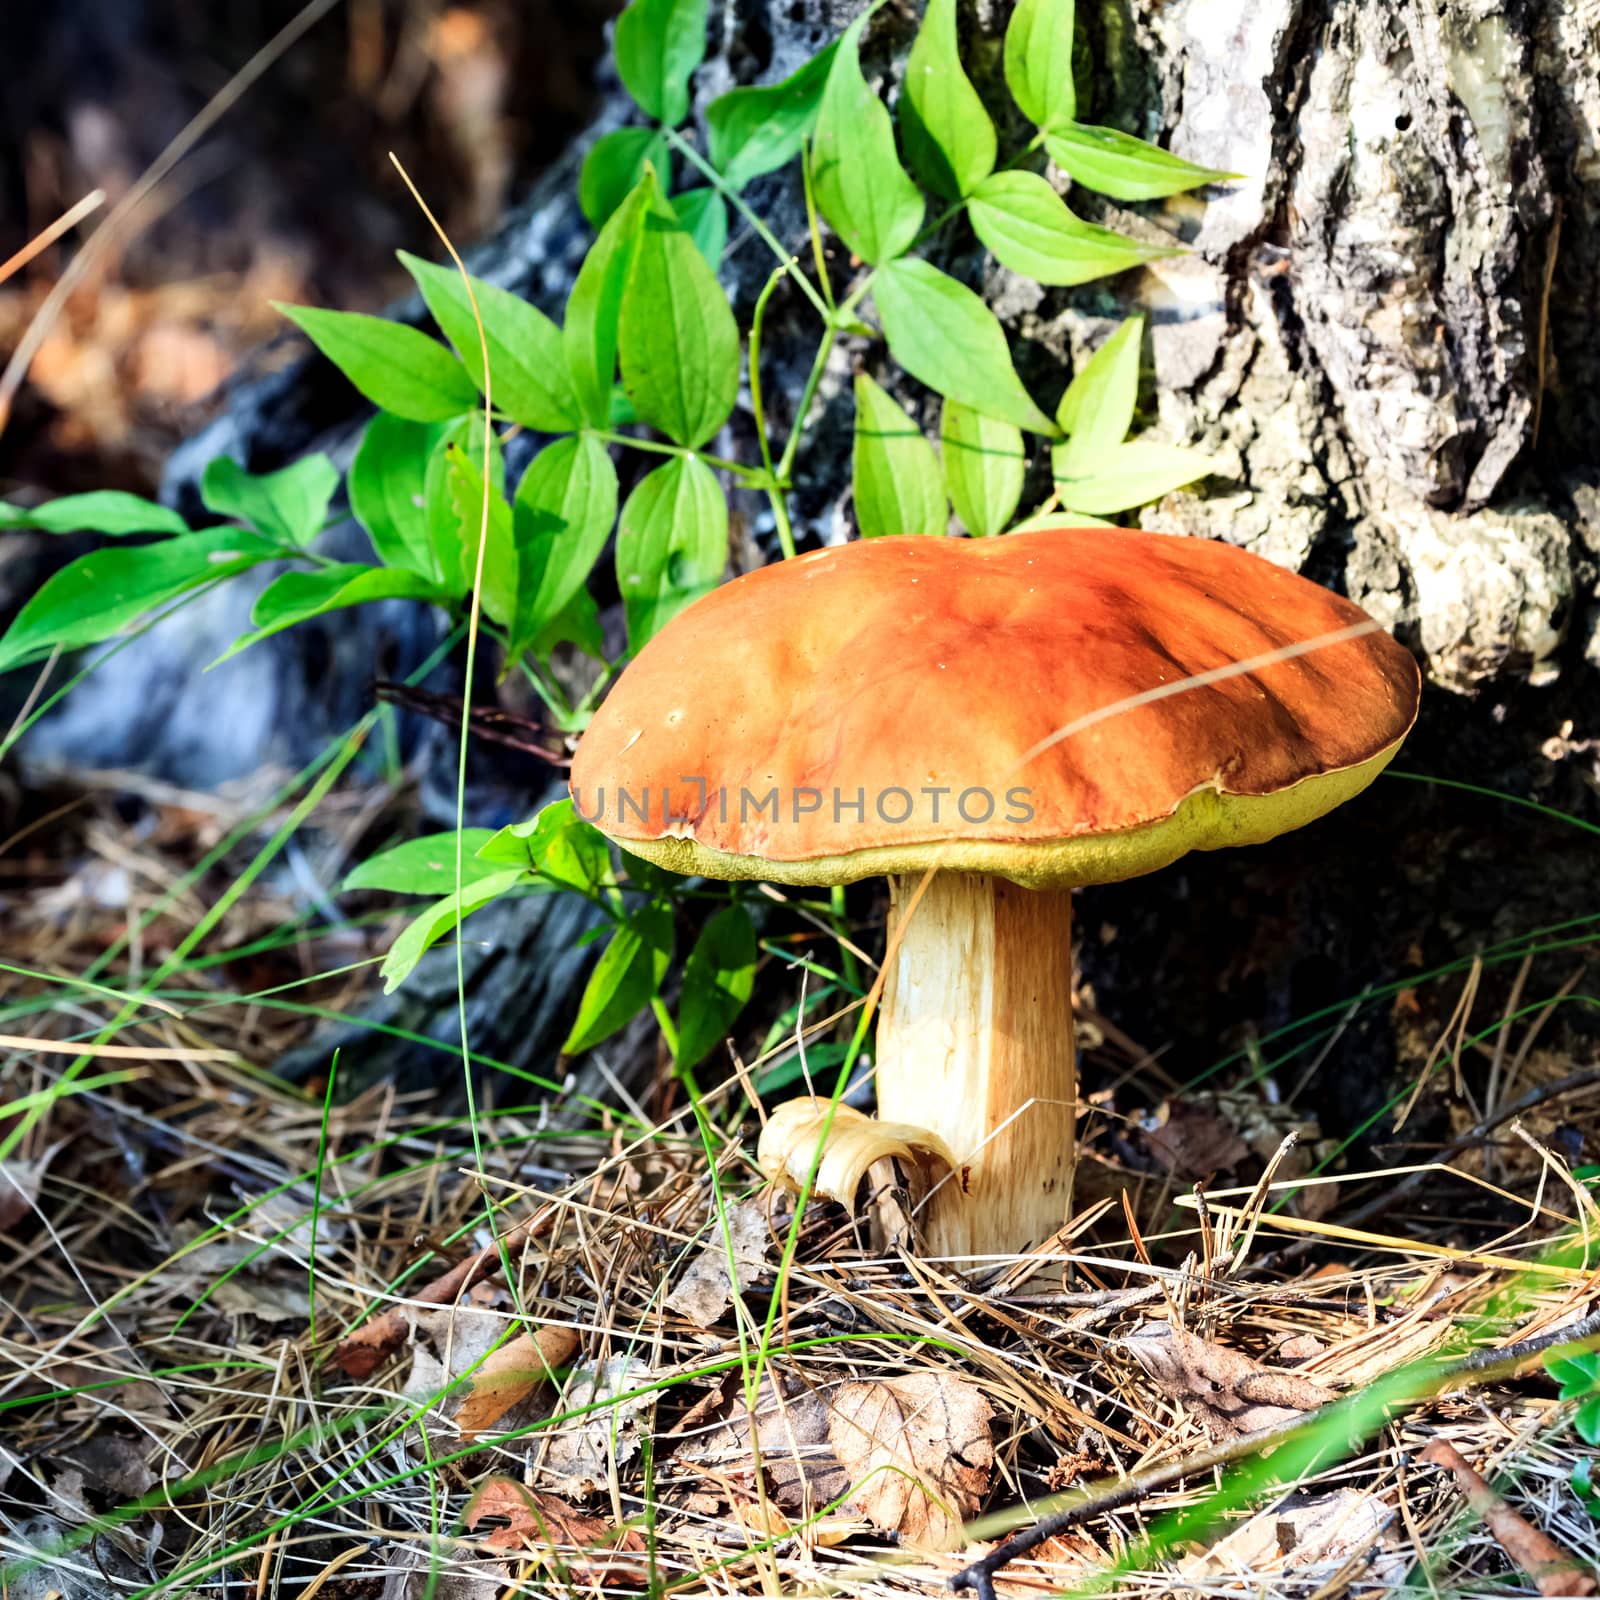 Big mushroom under the tree